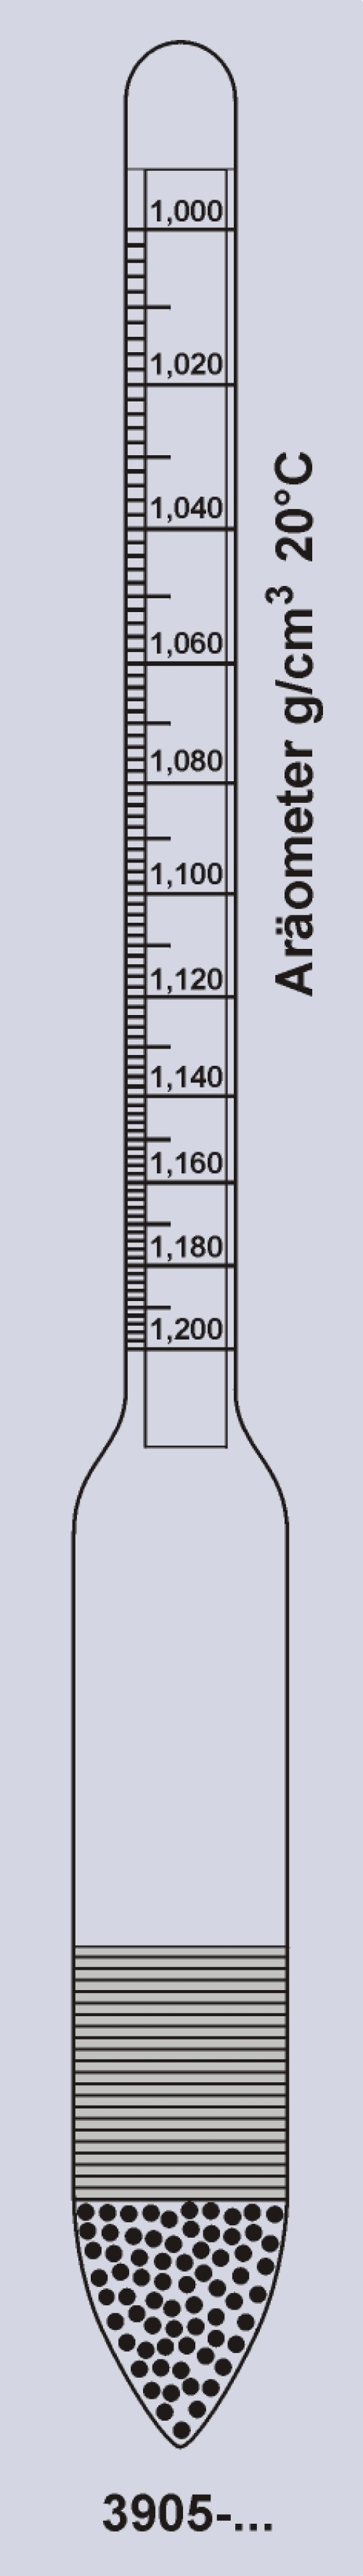 Aräometer nach Dichte für Milch nach DIN 10 290 mit Thermometer